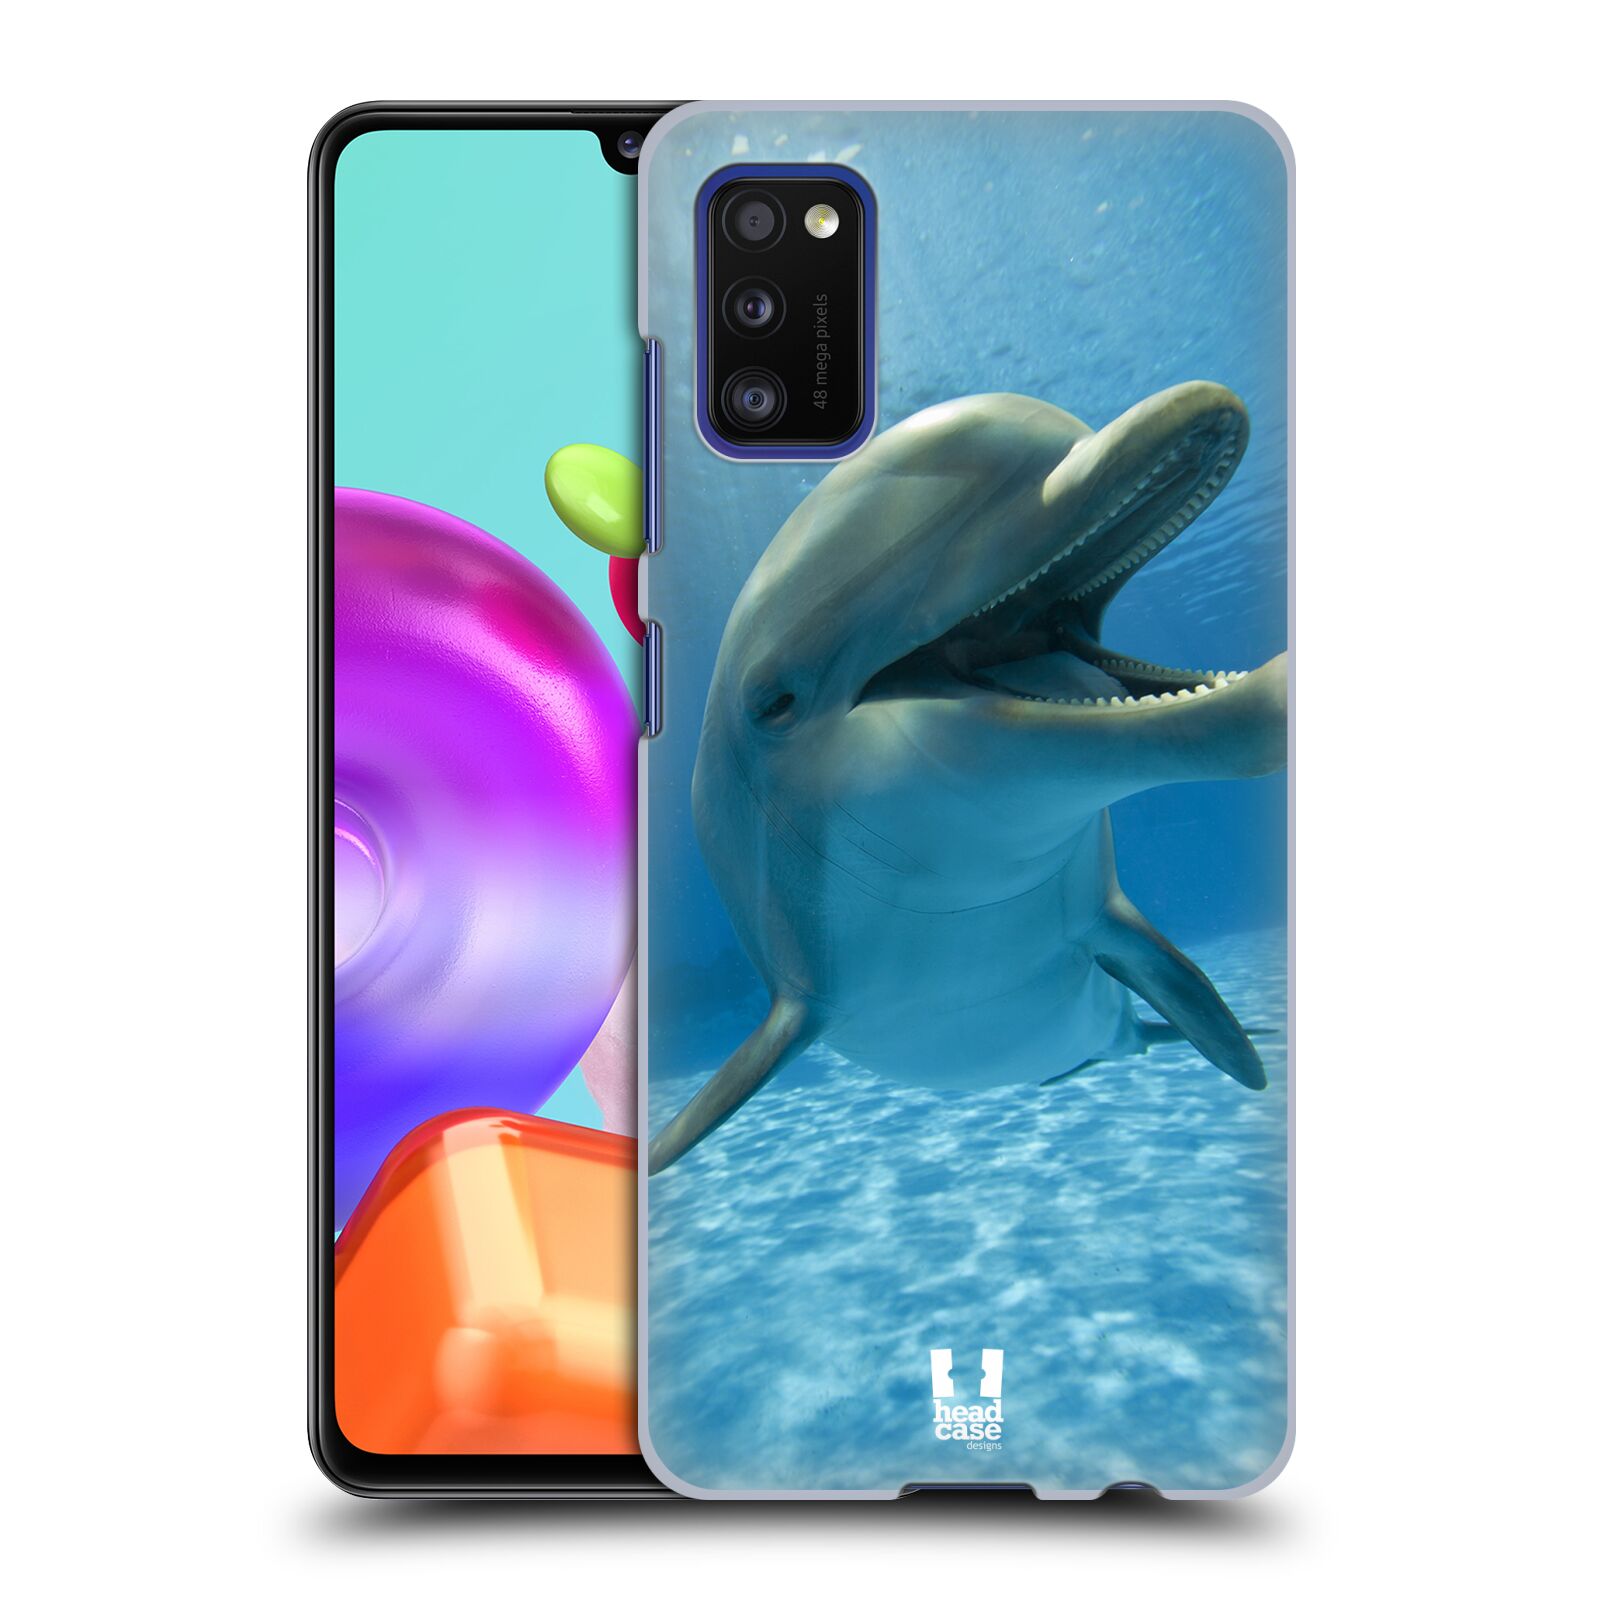 Zadní obal pro mobil Samsung Galaxy A41 - HEAD CASE - Svět zvířat delfín v moři